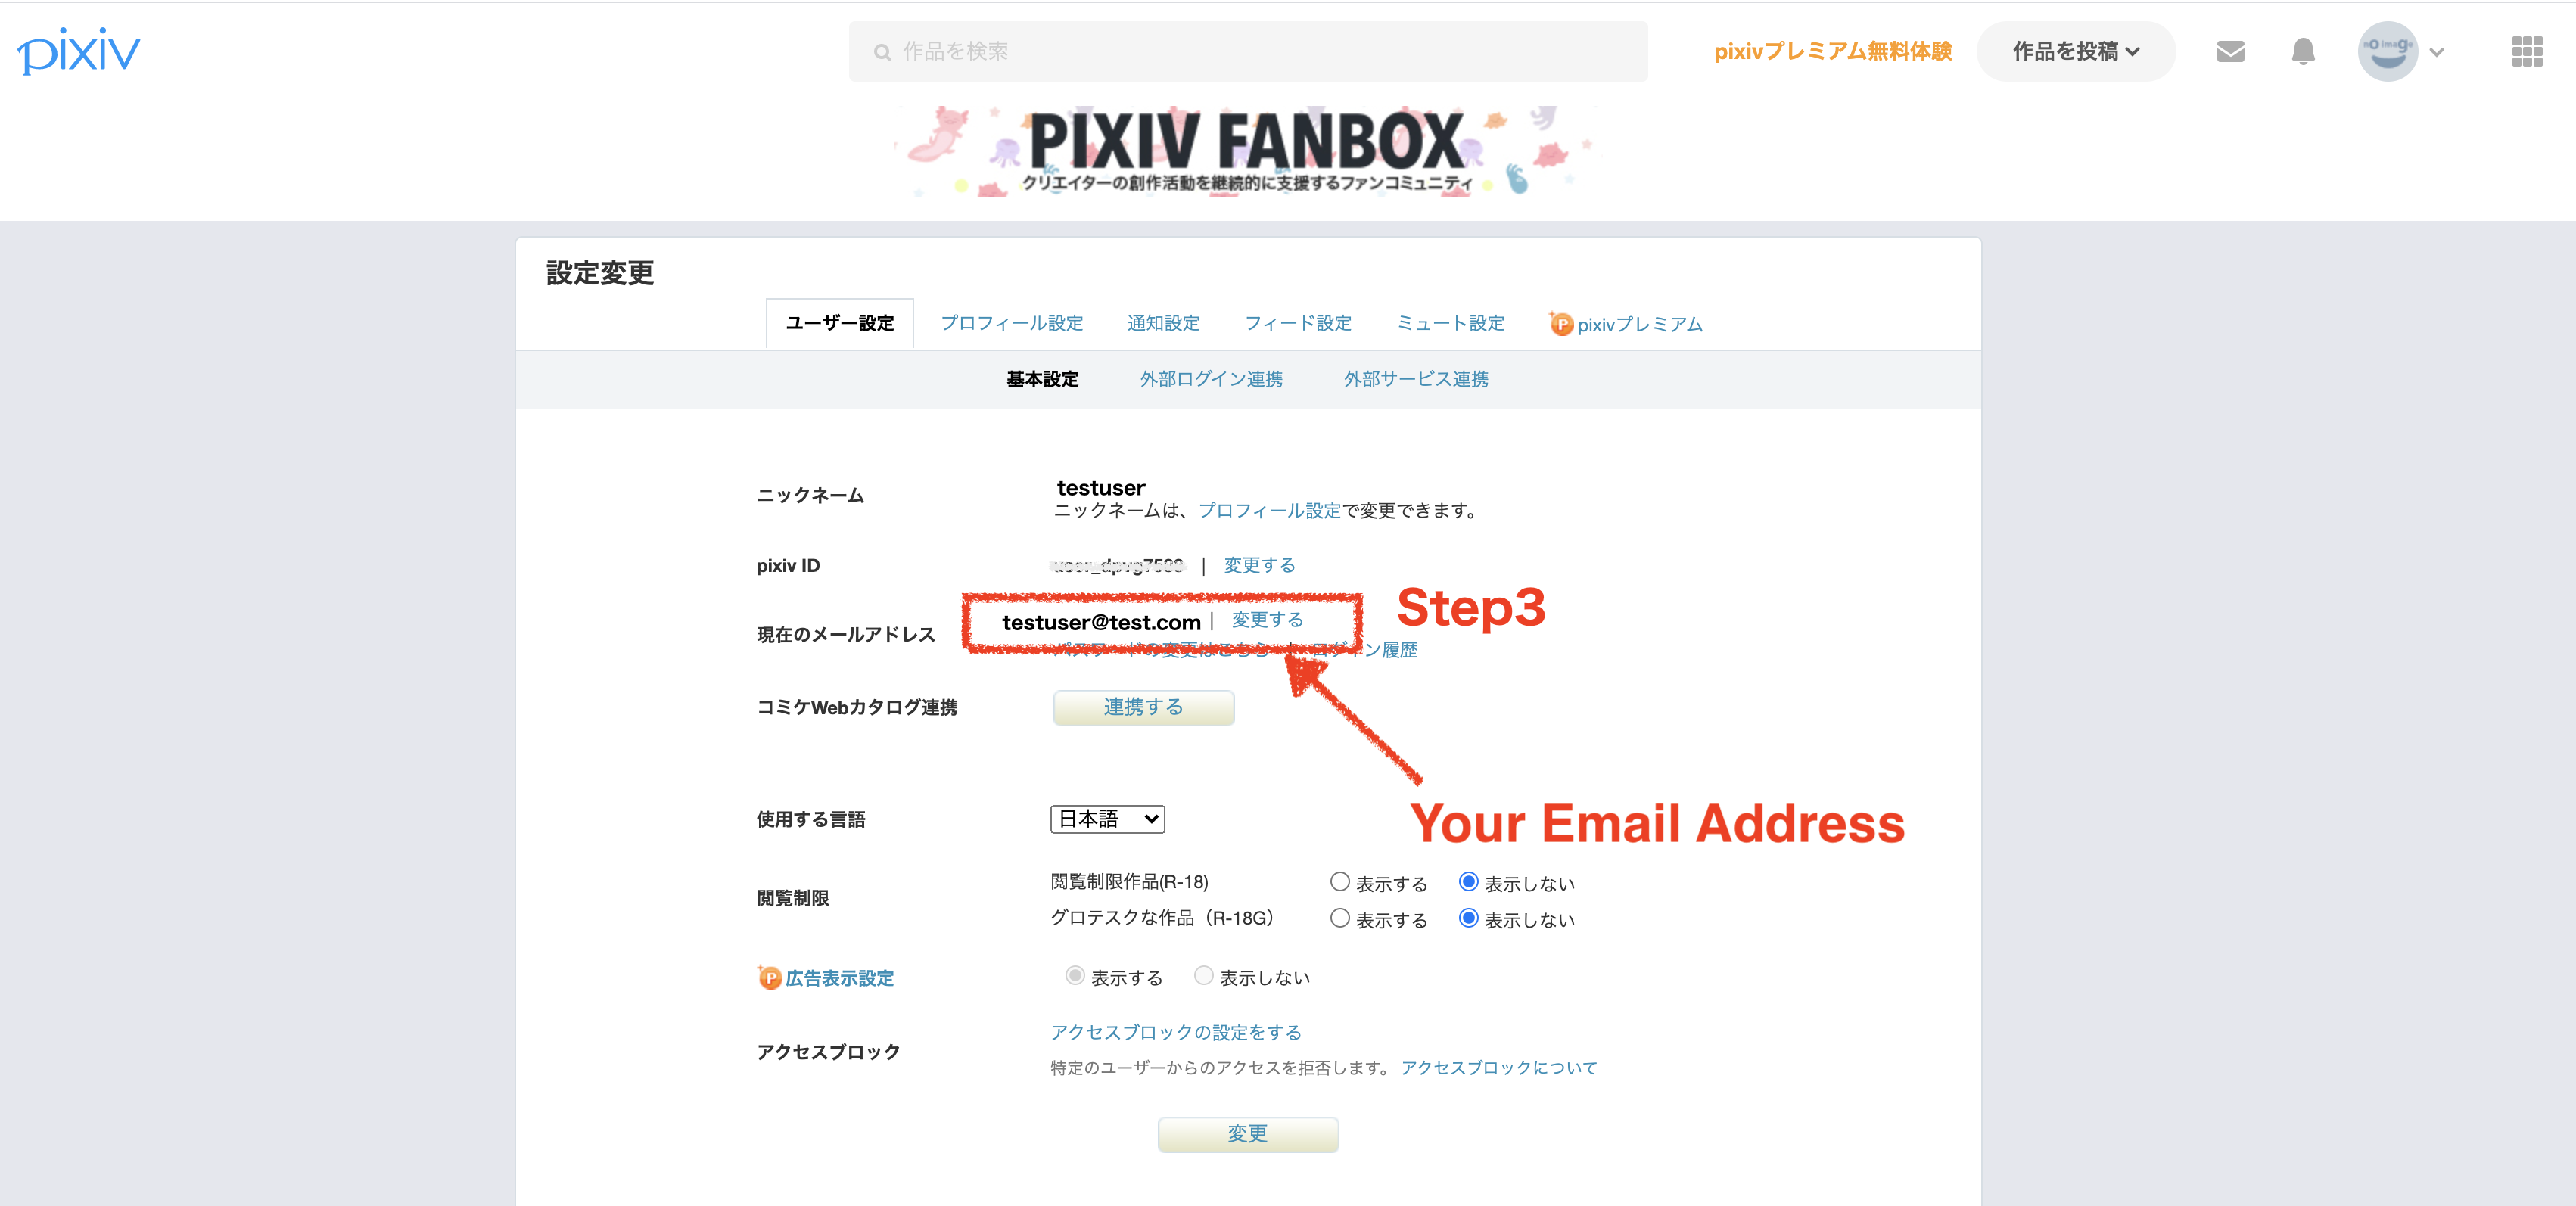 How To Delete Pixiv Account?